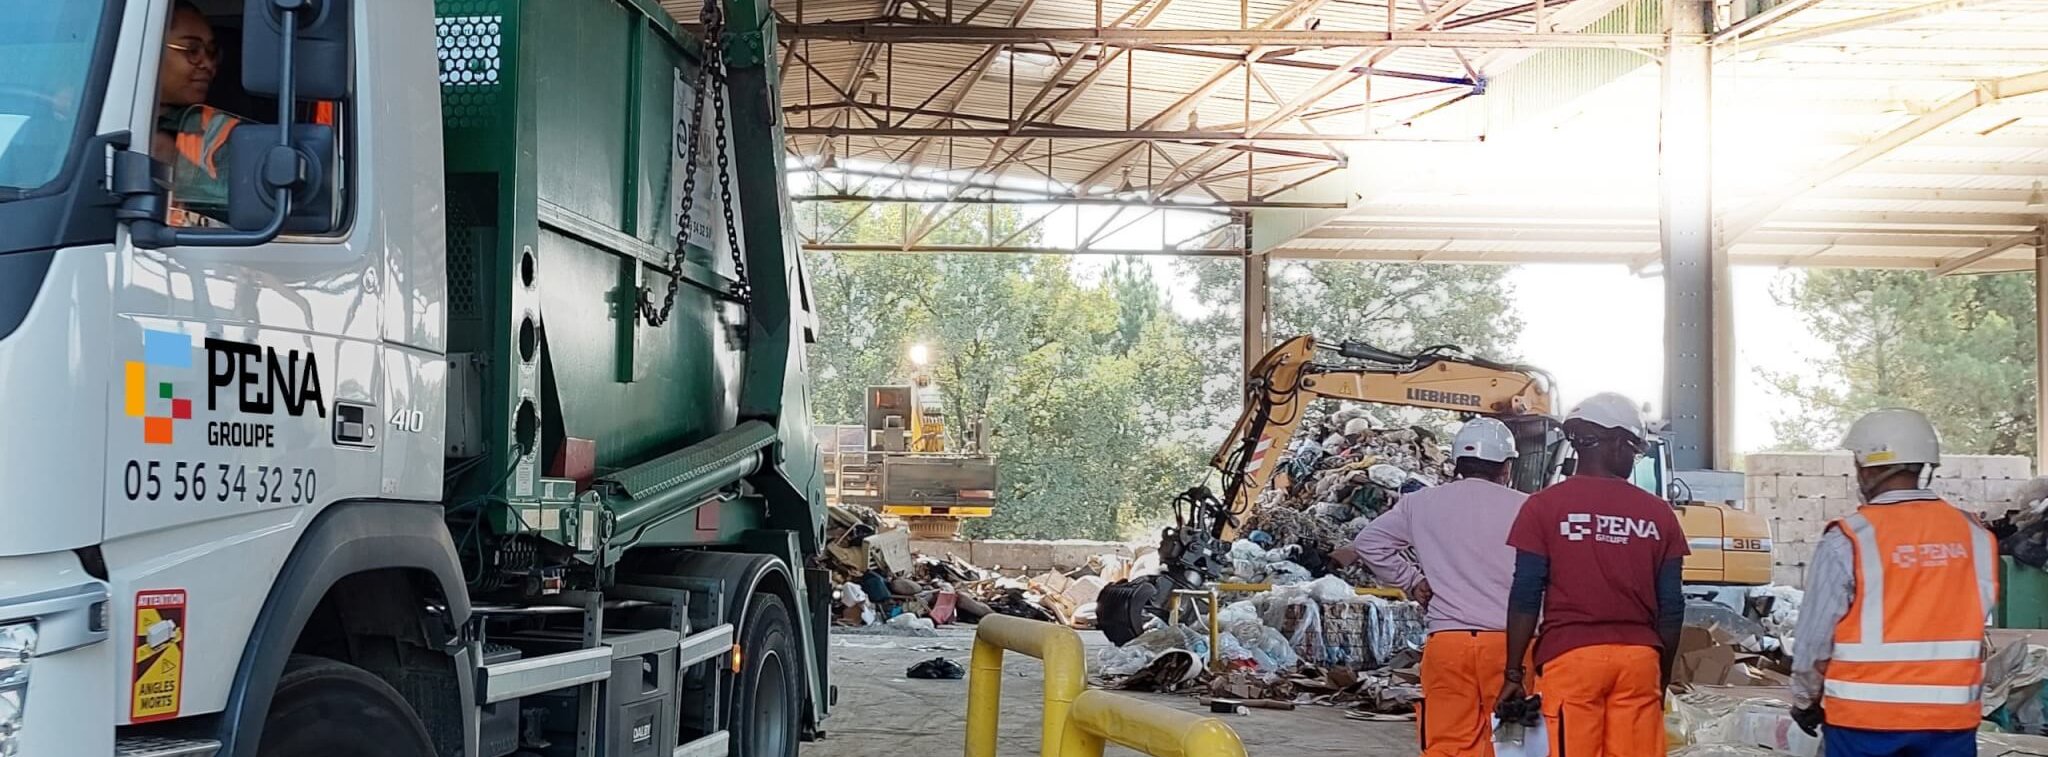 Groupe Péna centre de recyclage déchets